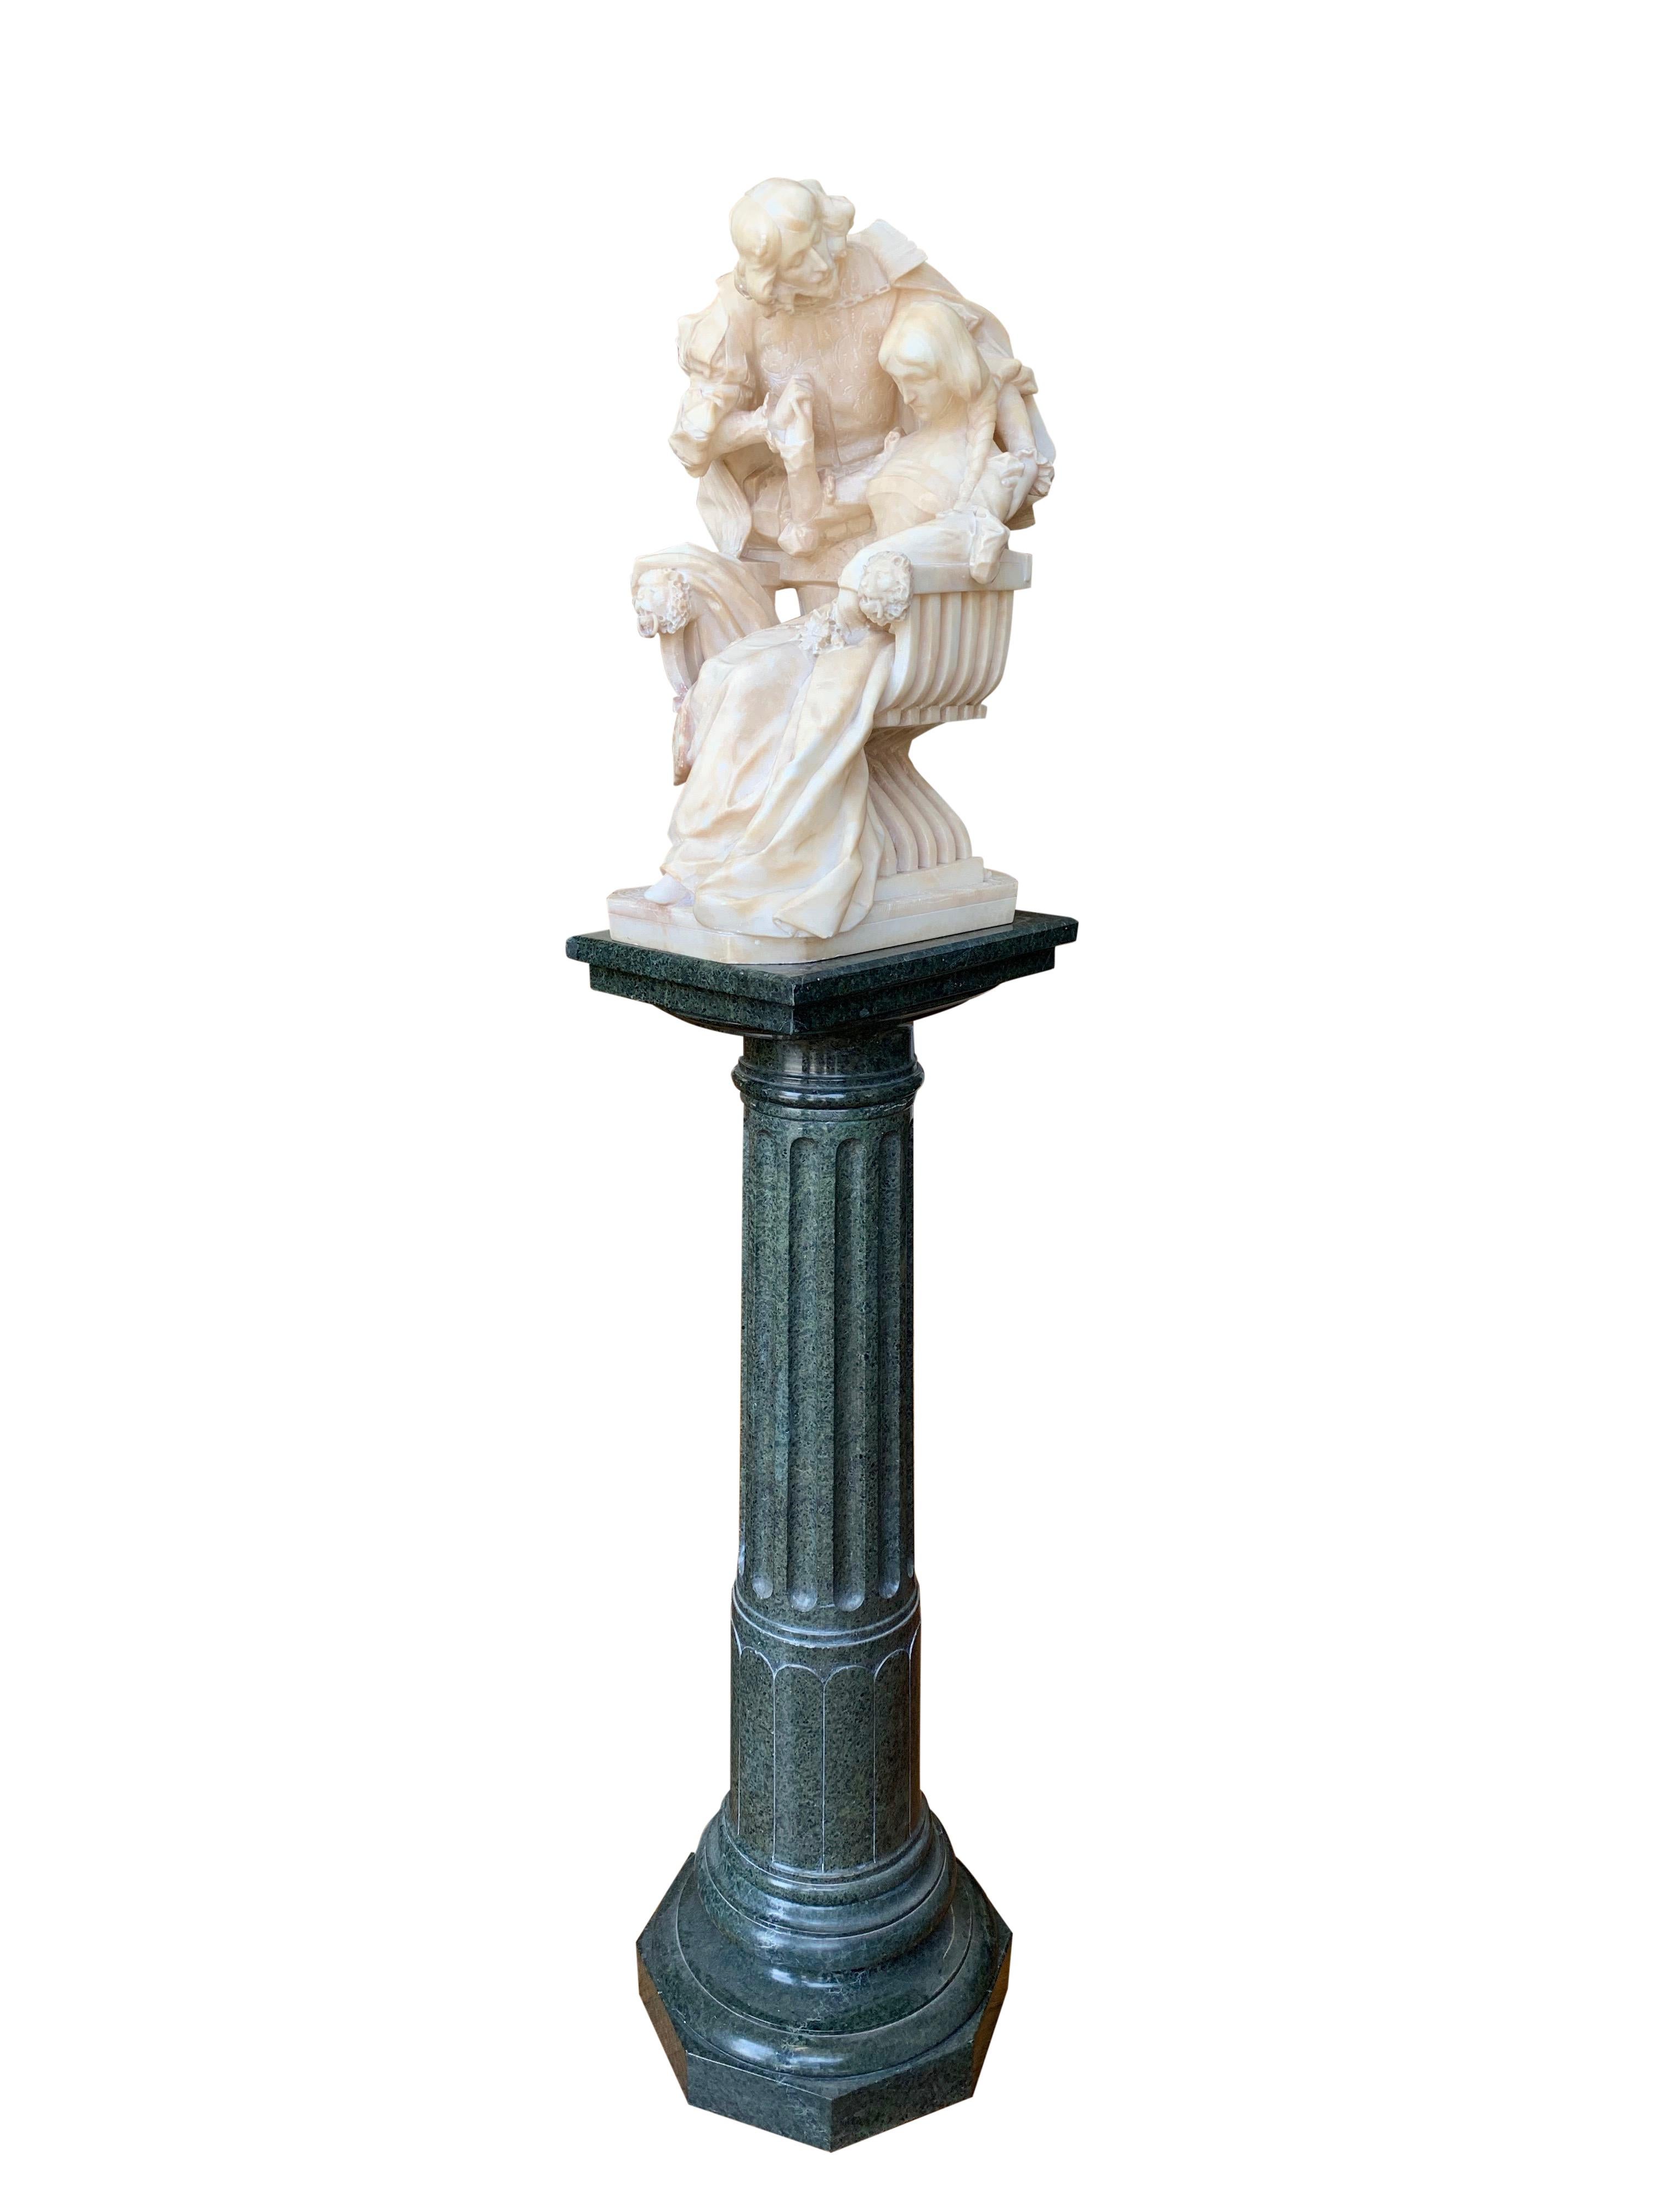 Hervorragend geschnitzte italienische Alabastergruppe aus dem 19. Jahrhundert, die einen Kavalier darstellt, der neben einer sitzenden Dame mit einer Blume in der Hand steht. Auf einem Sockel aus grünem Marmor mit rechteckiger Platte und achteckigem